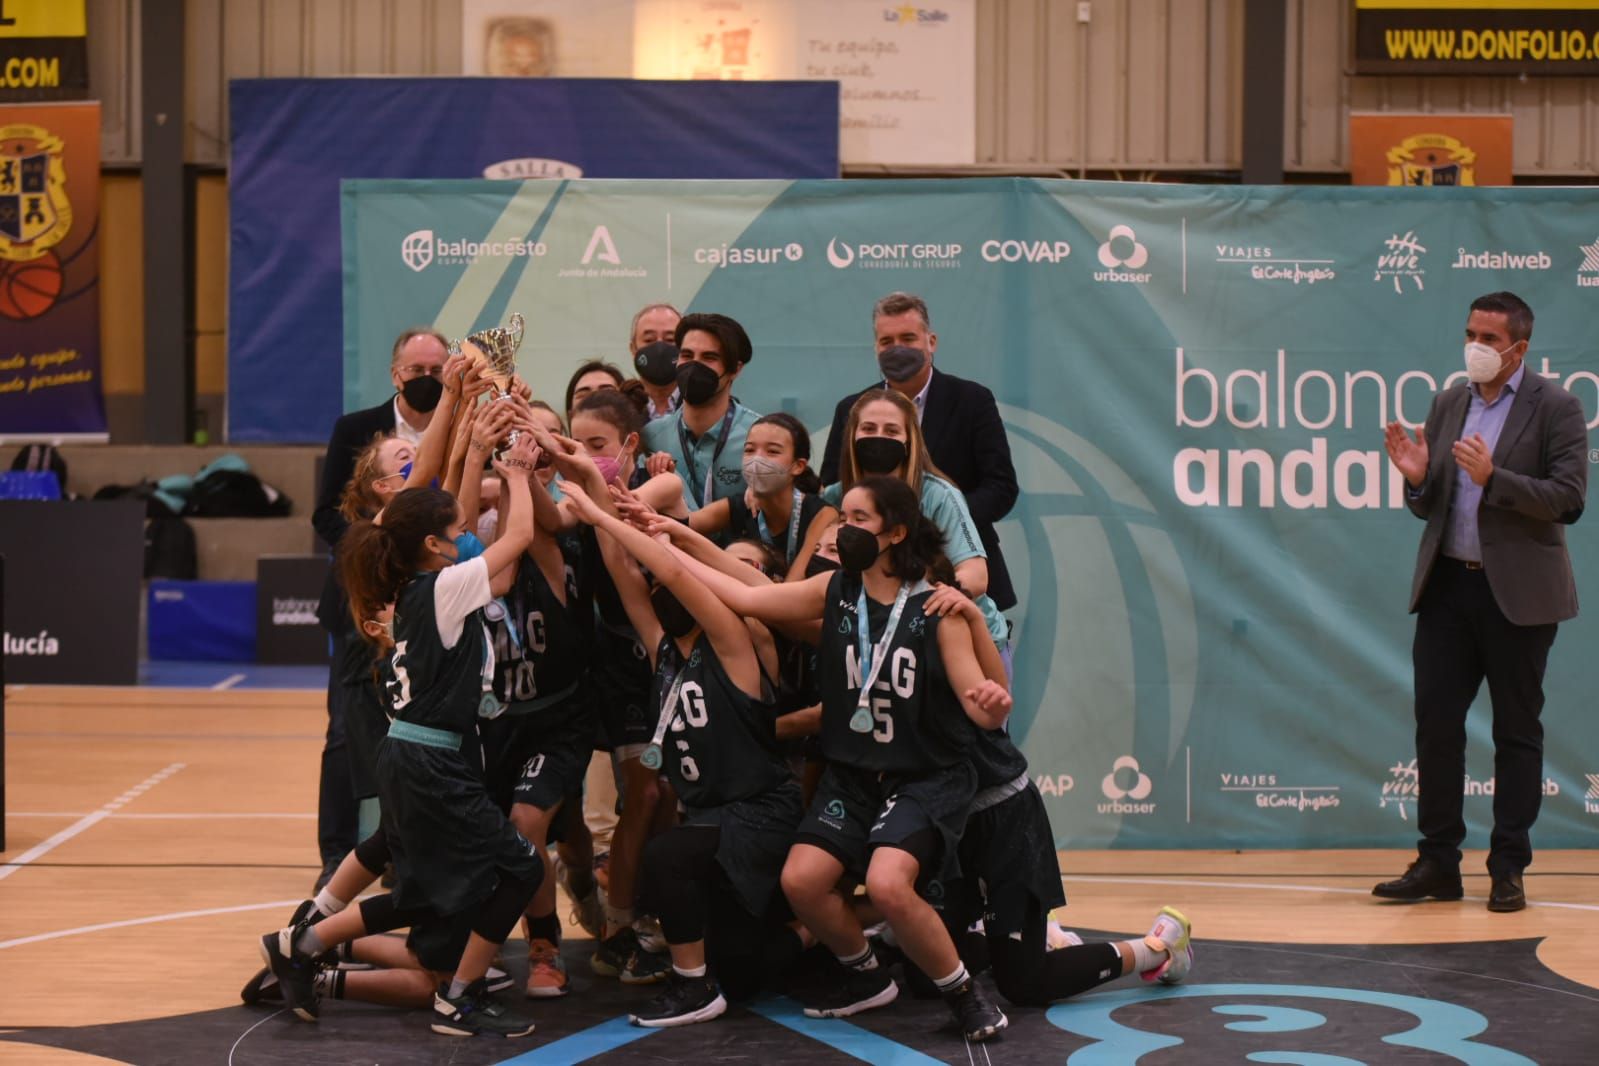 Las imágenes de la selección de Córdoba, campeona de Andalucía de baloncesto